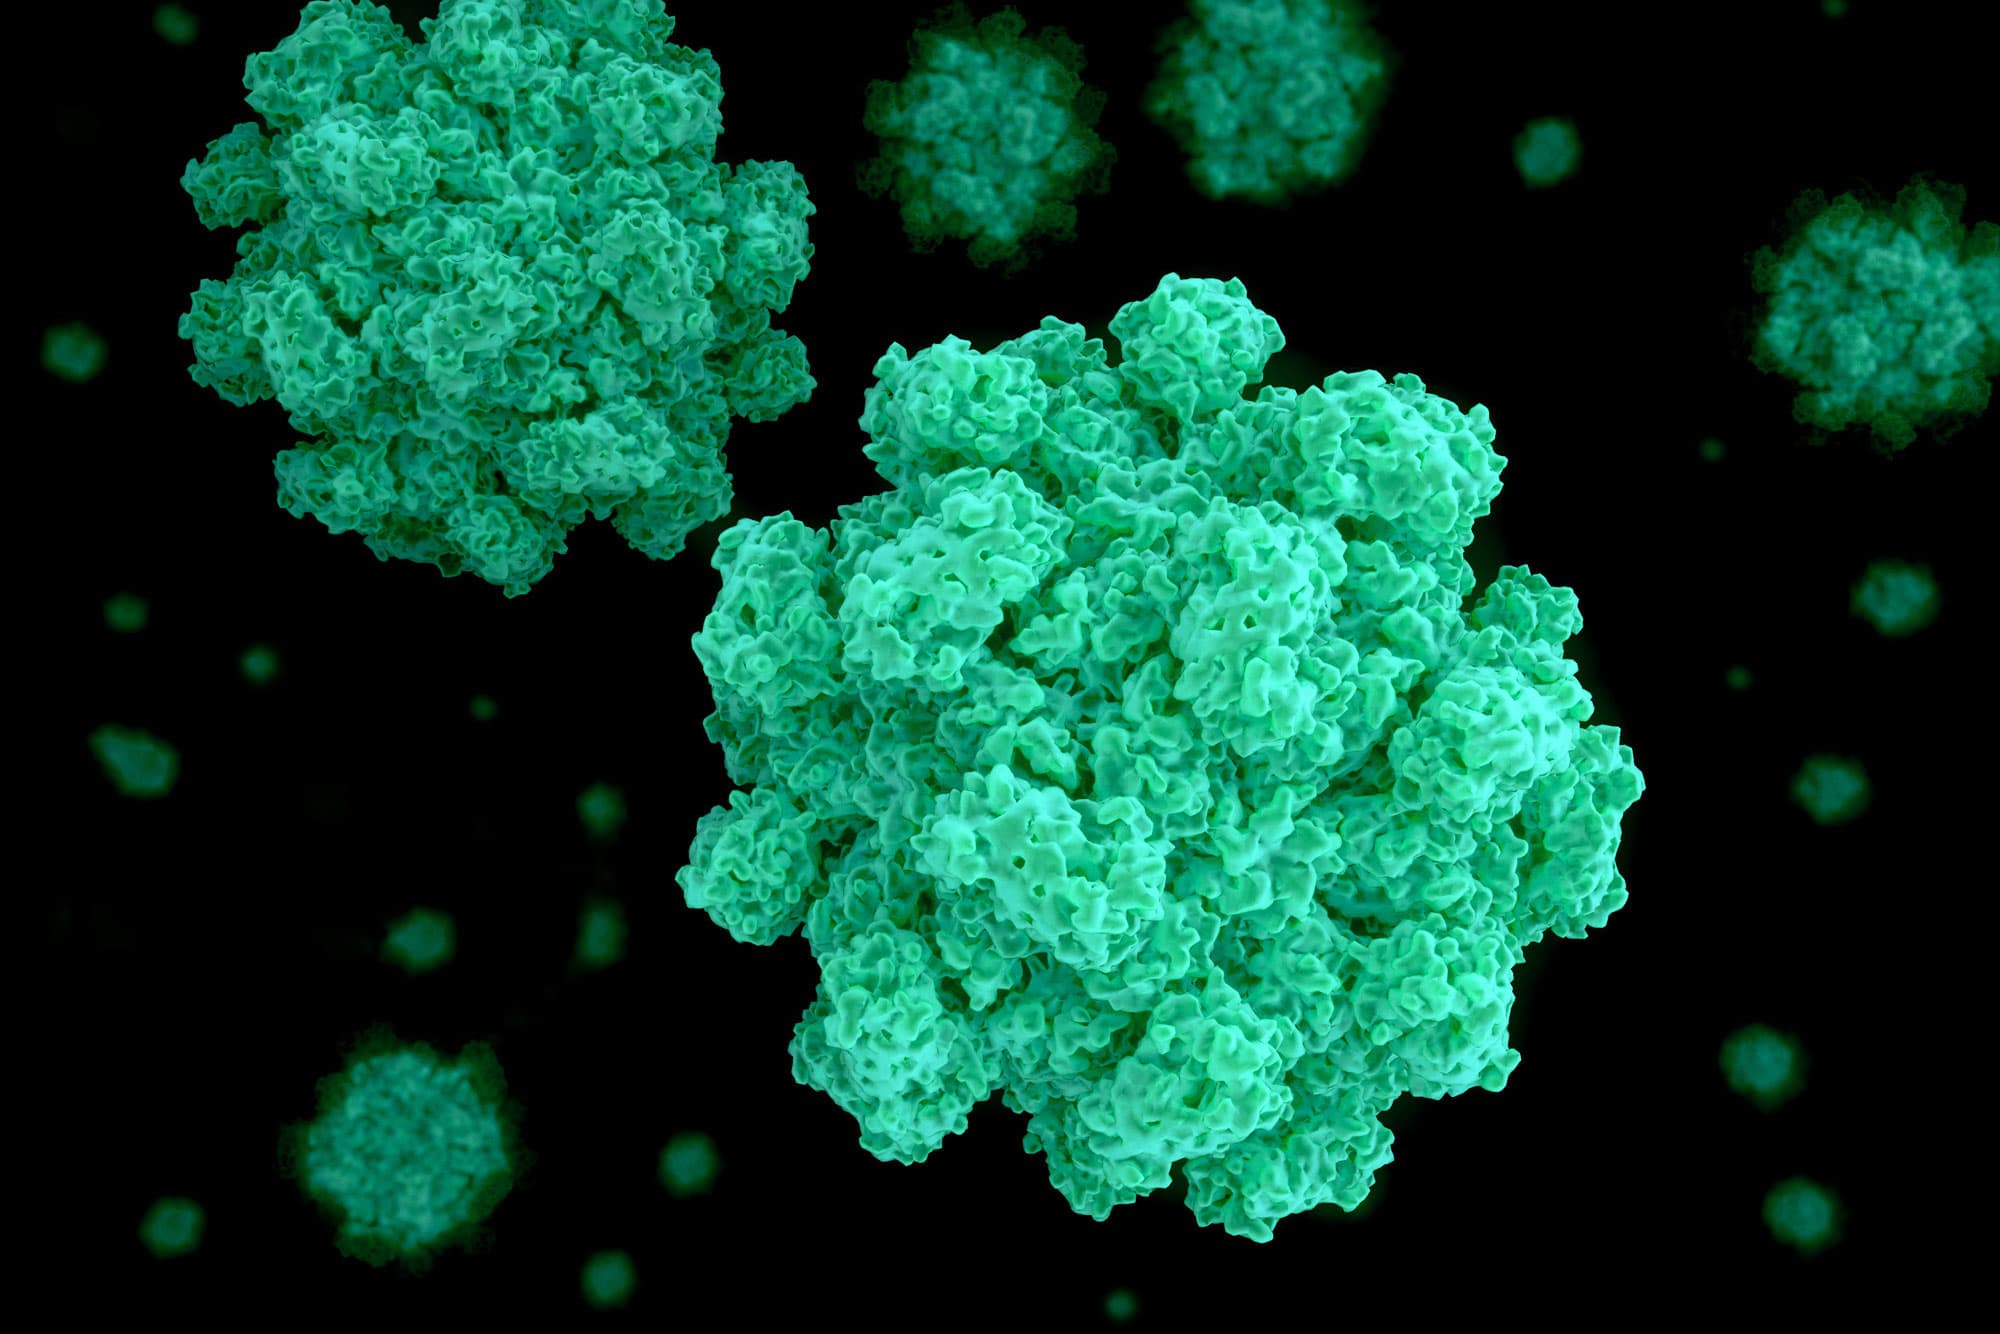 What is norovirus?